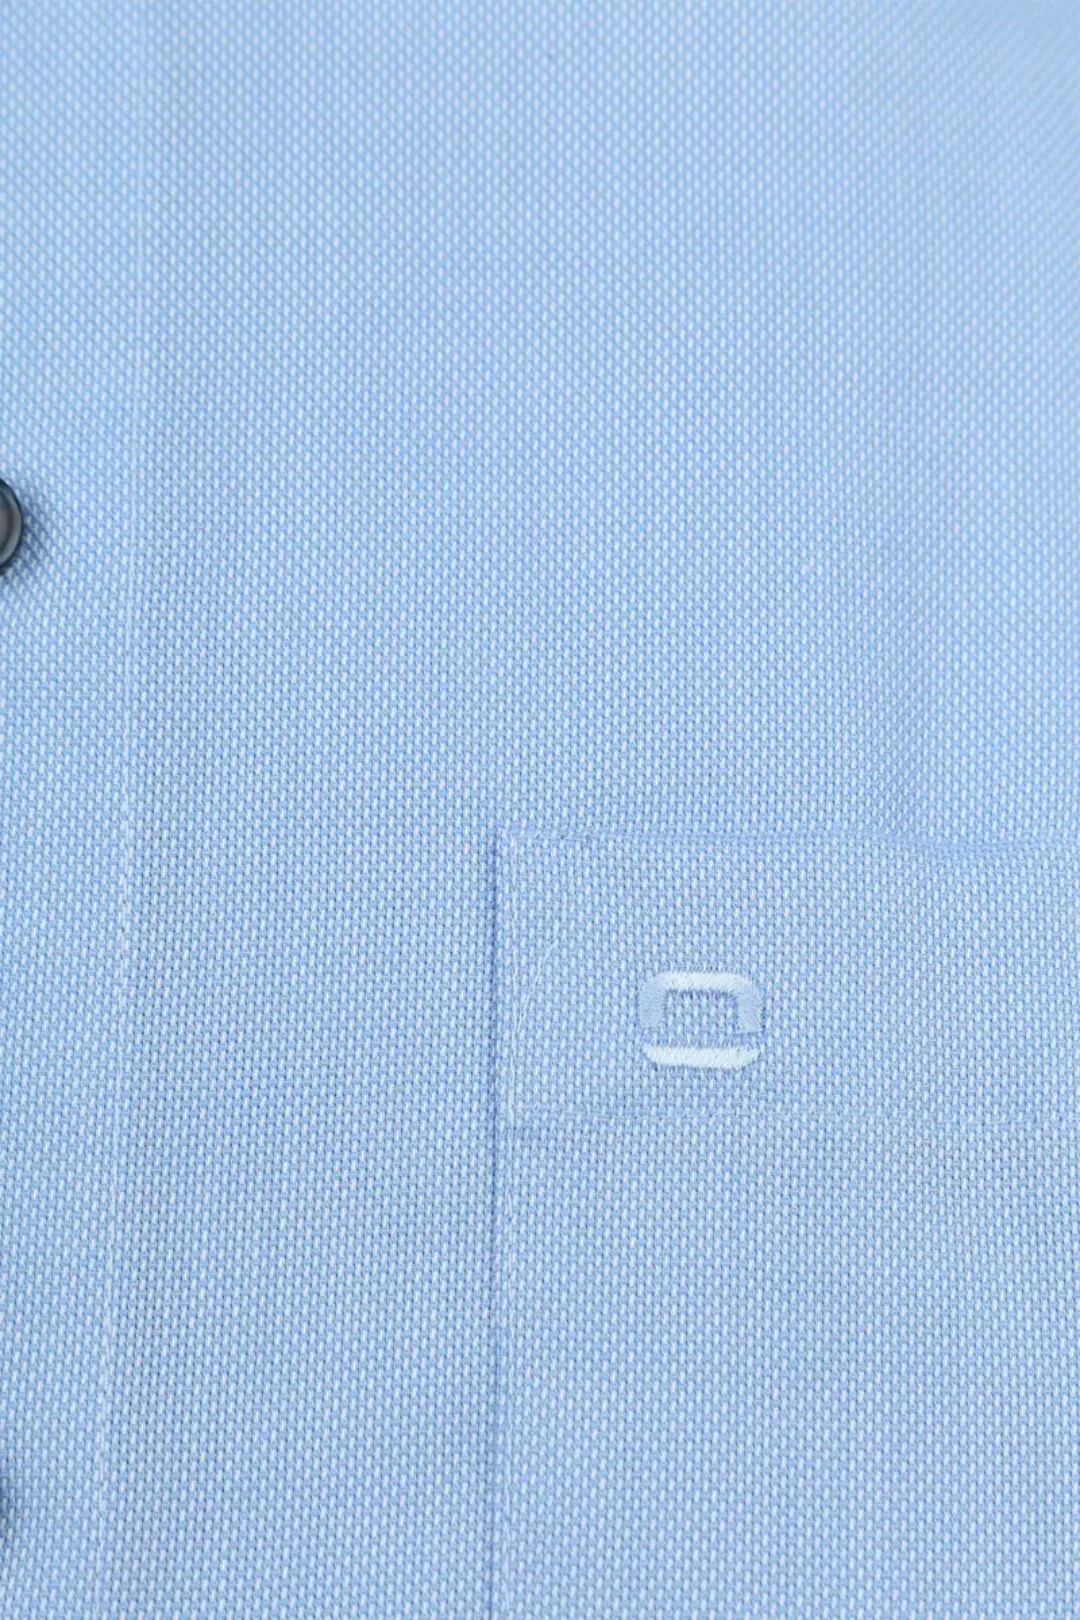 OLYMP Luxor Hemd Hellblau  - Größe 44 günstig online kaufen